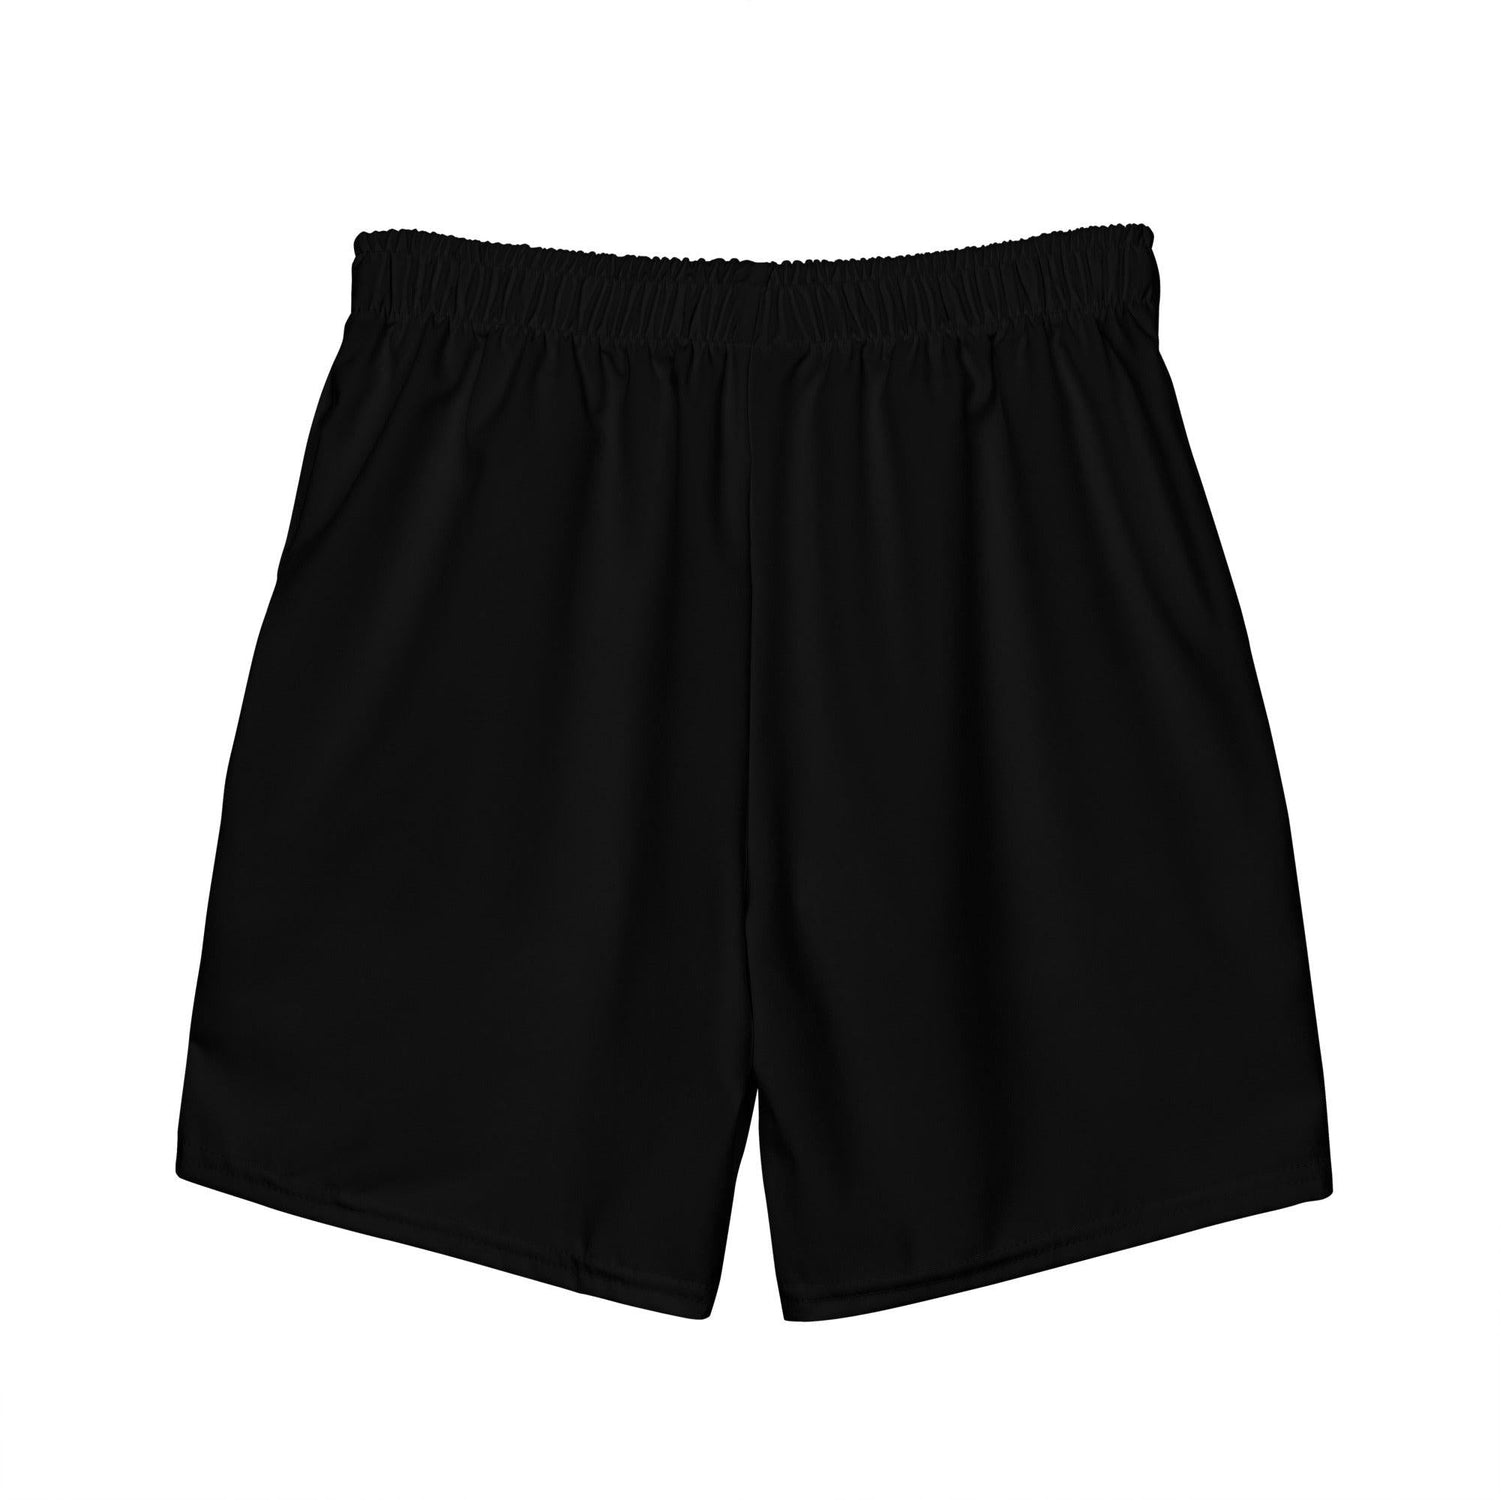 Groom Swim Shorts - Men's swim trunks - Bachelor Party Swimwear by Oaklynn Lane